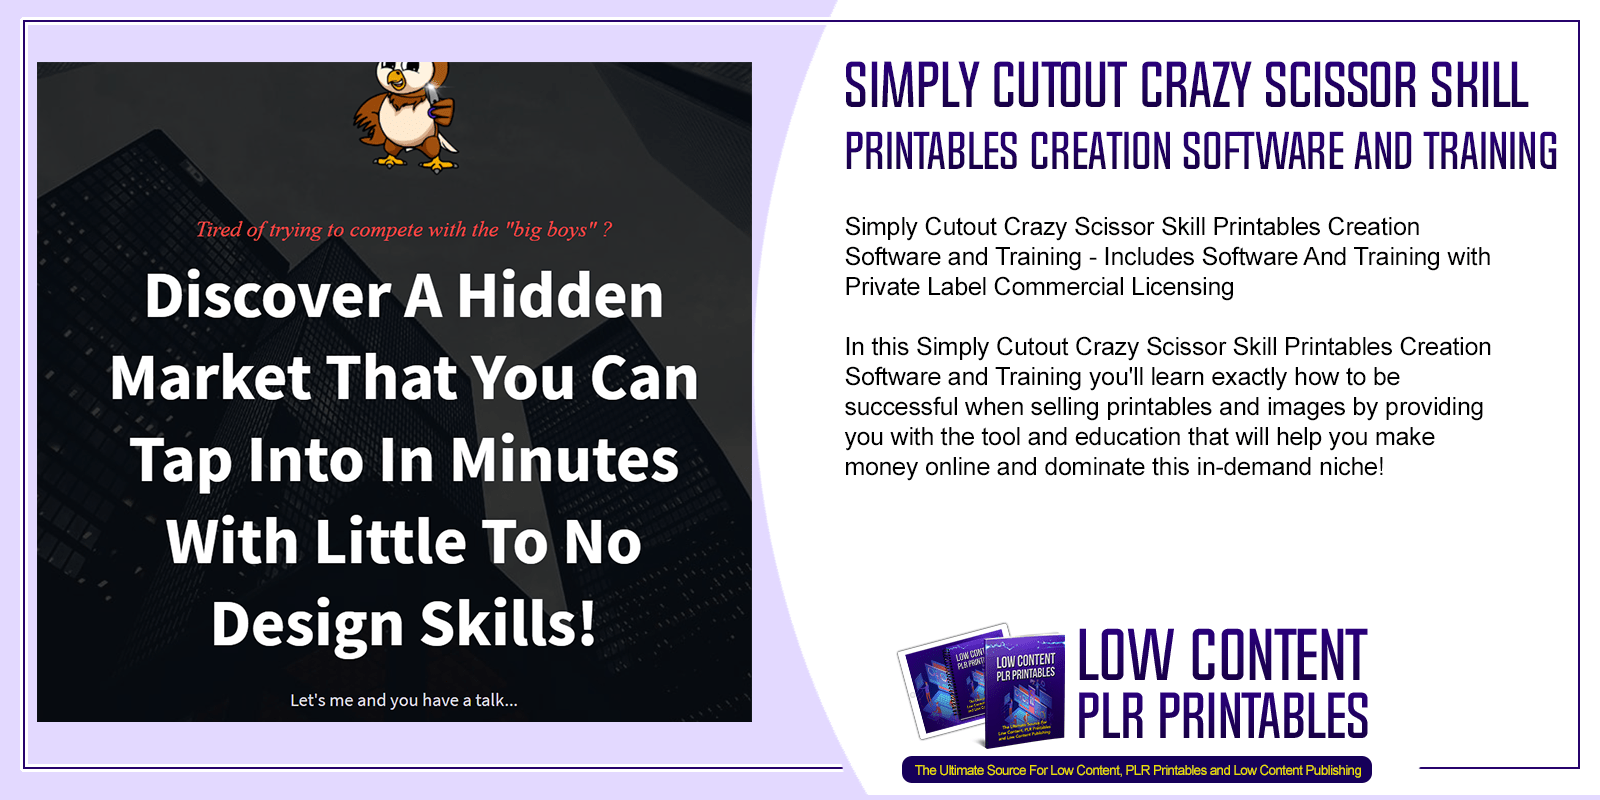 Simply Cutout Crazy Scissor Skill Printables Creation Software and Training